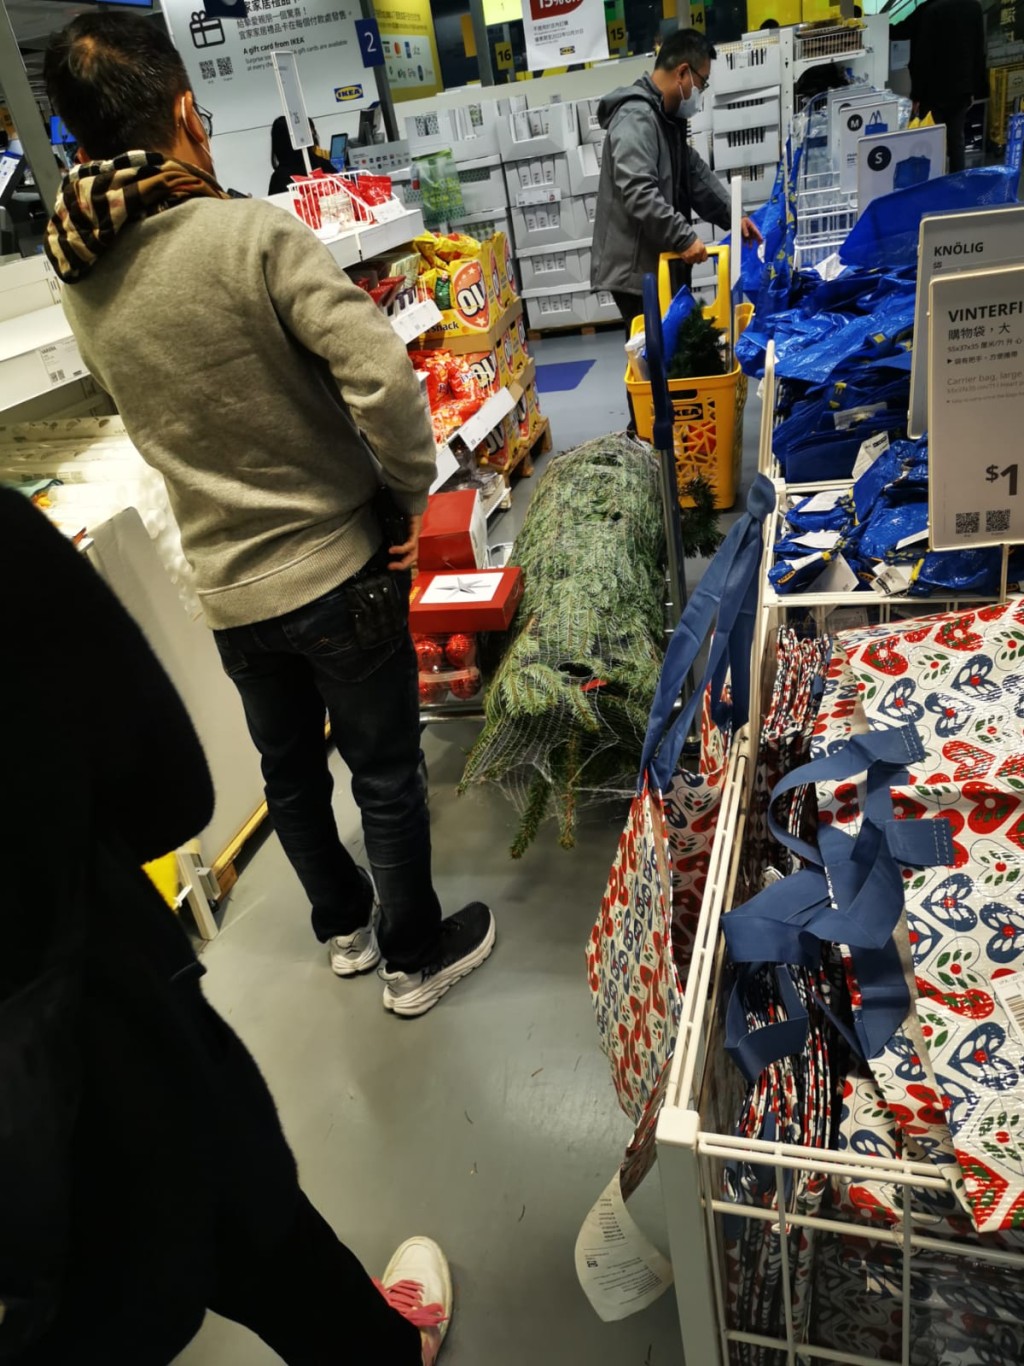 九龙湾IKEA分店现抢购真圣诞树热潮。(读者提供)